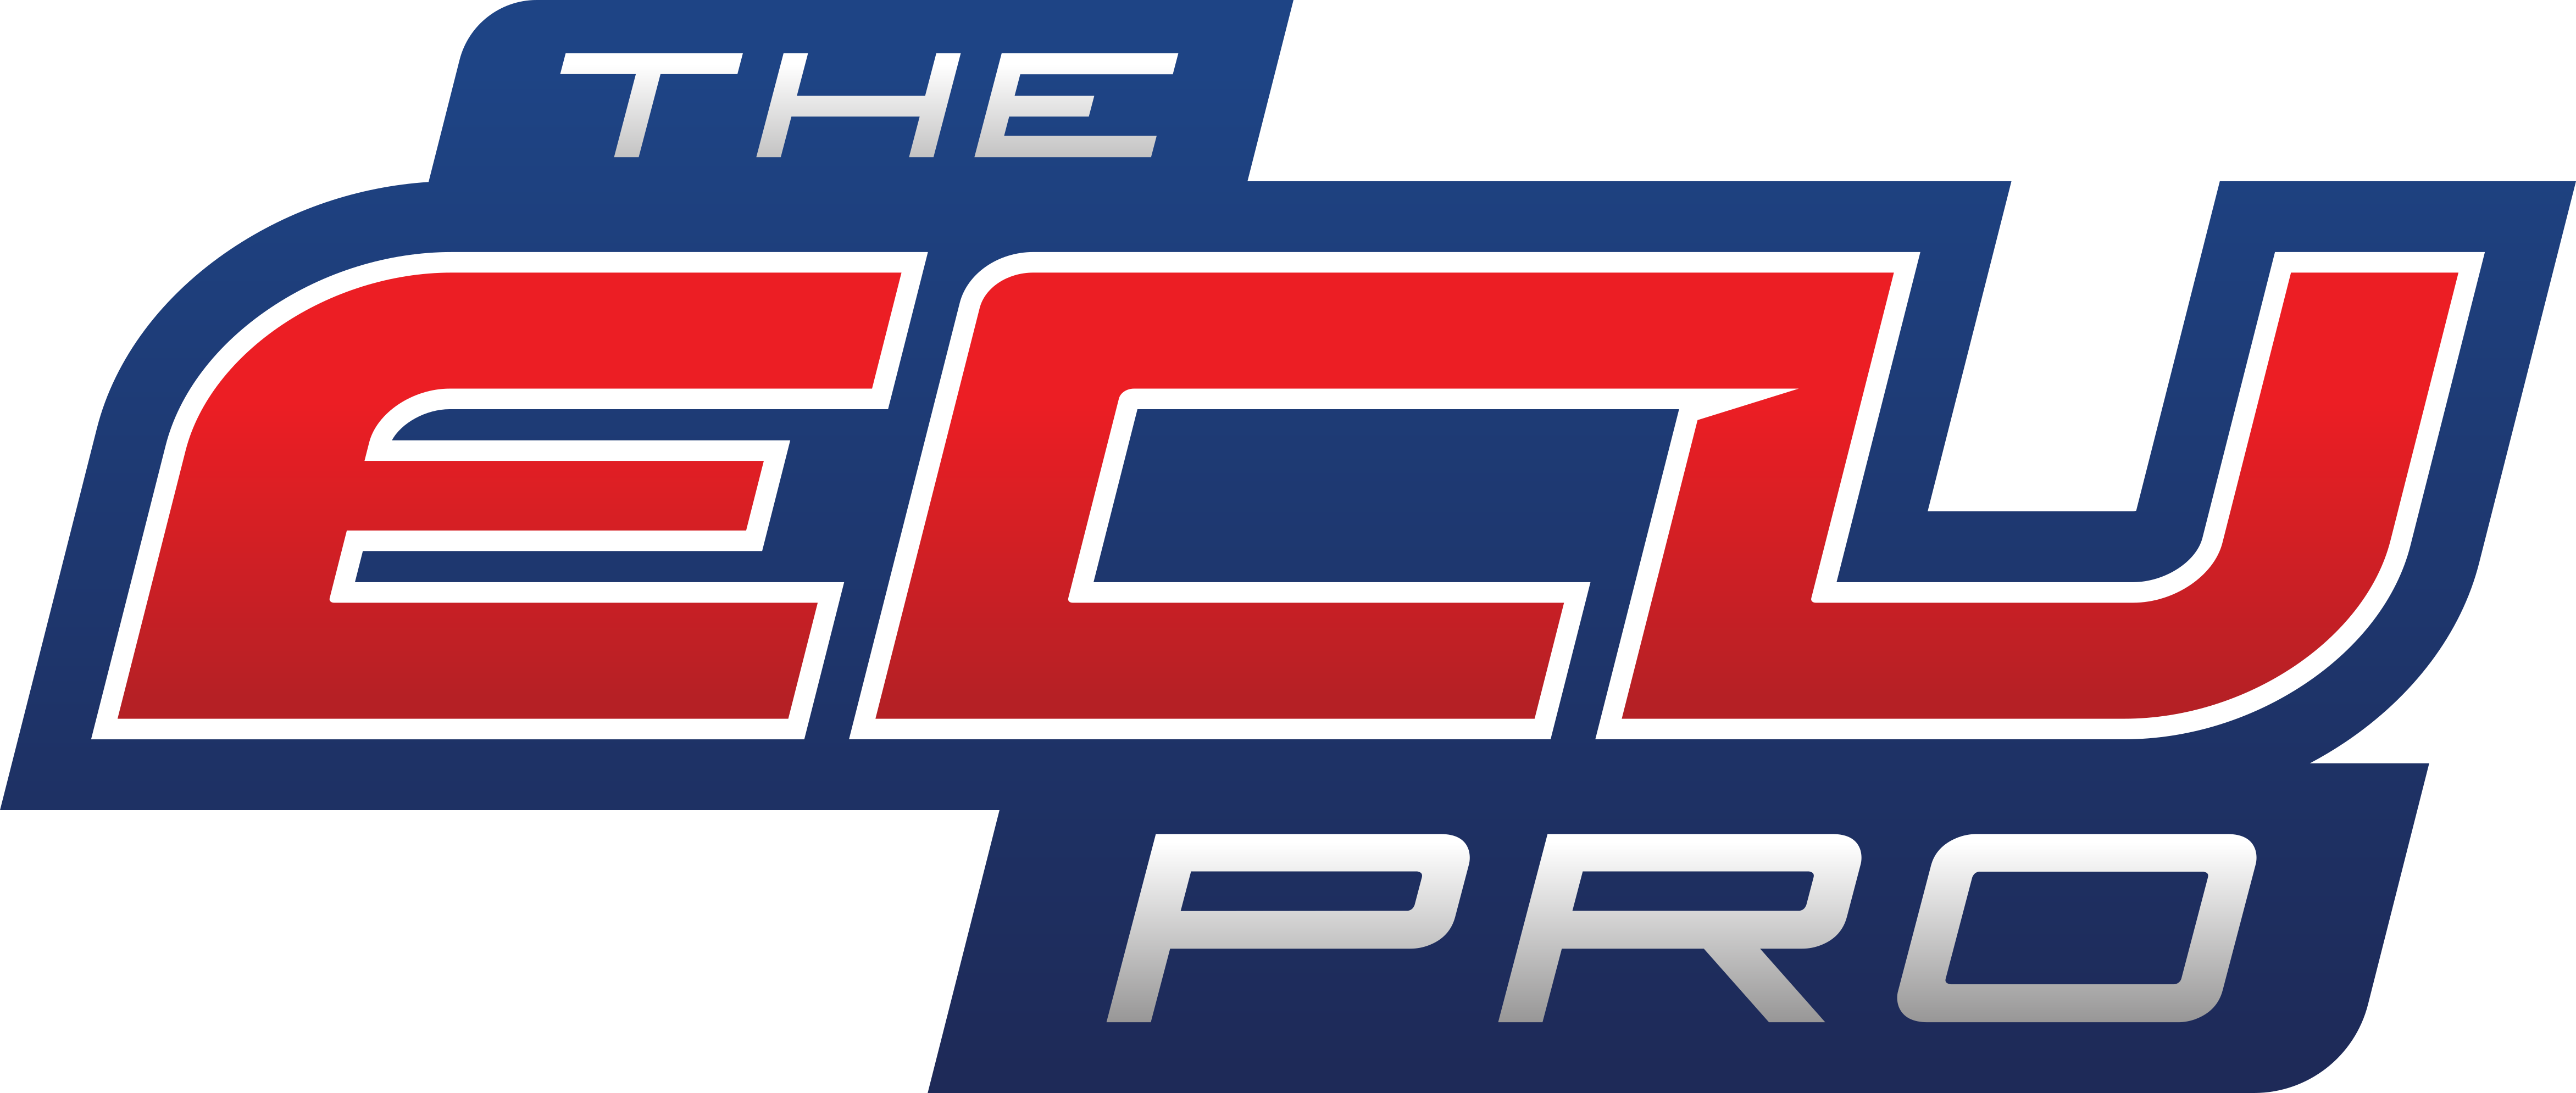 Logo The-ecu-pro